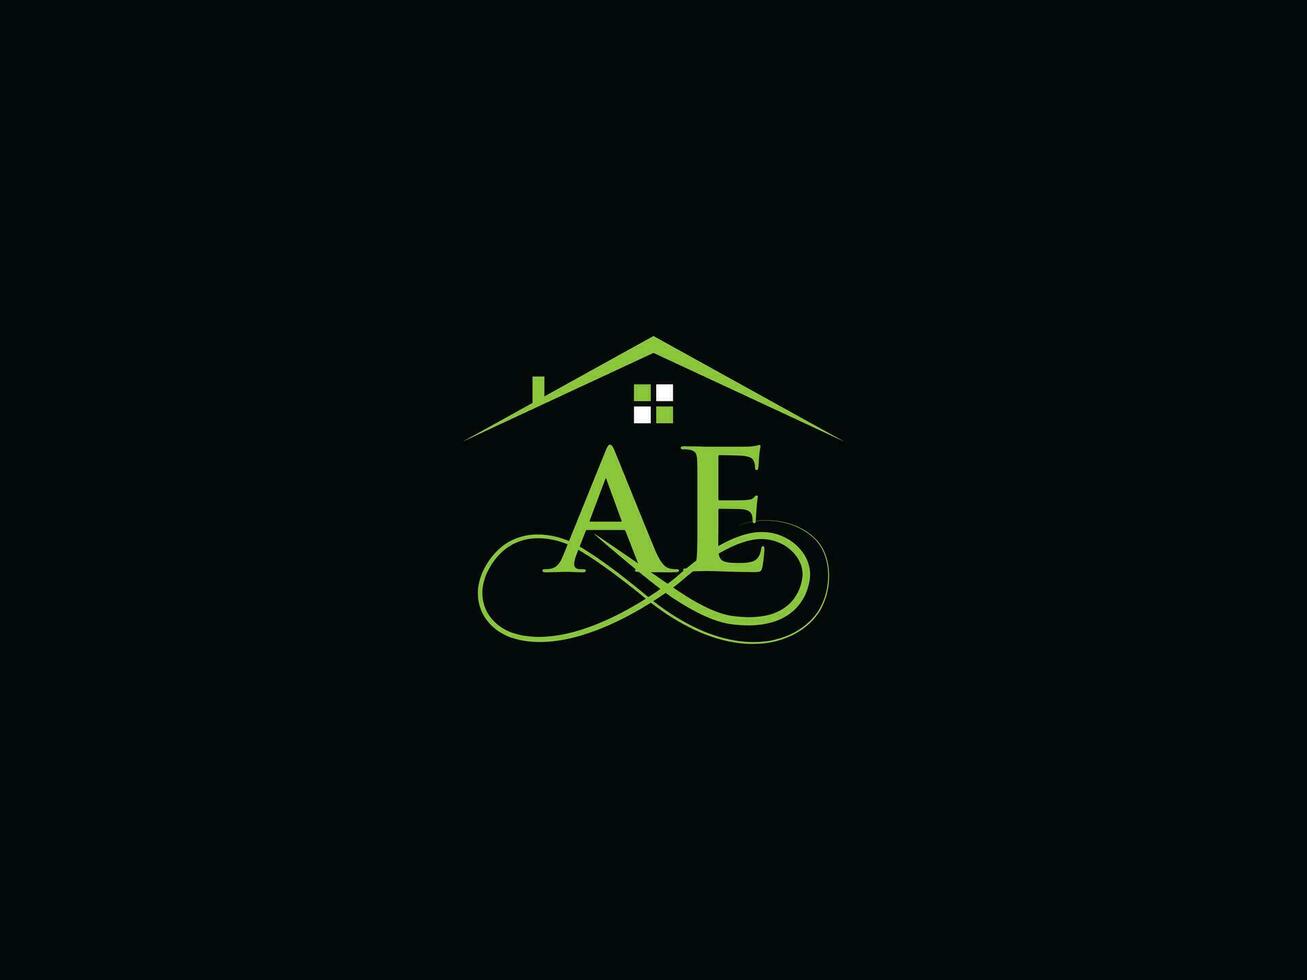 abstract ae logo brief, gebouw ae luxe echt landgoed logo voor bedrijf vector